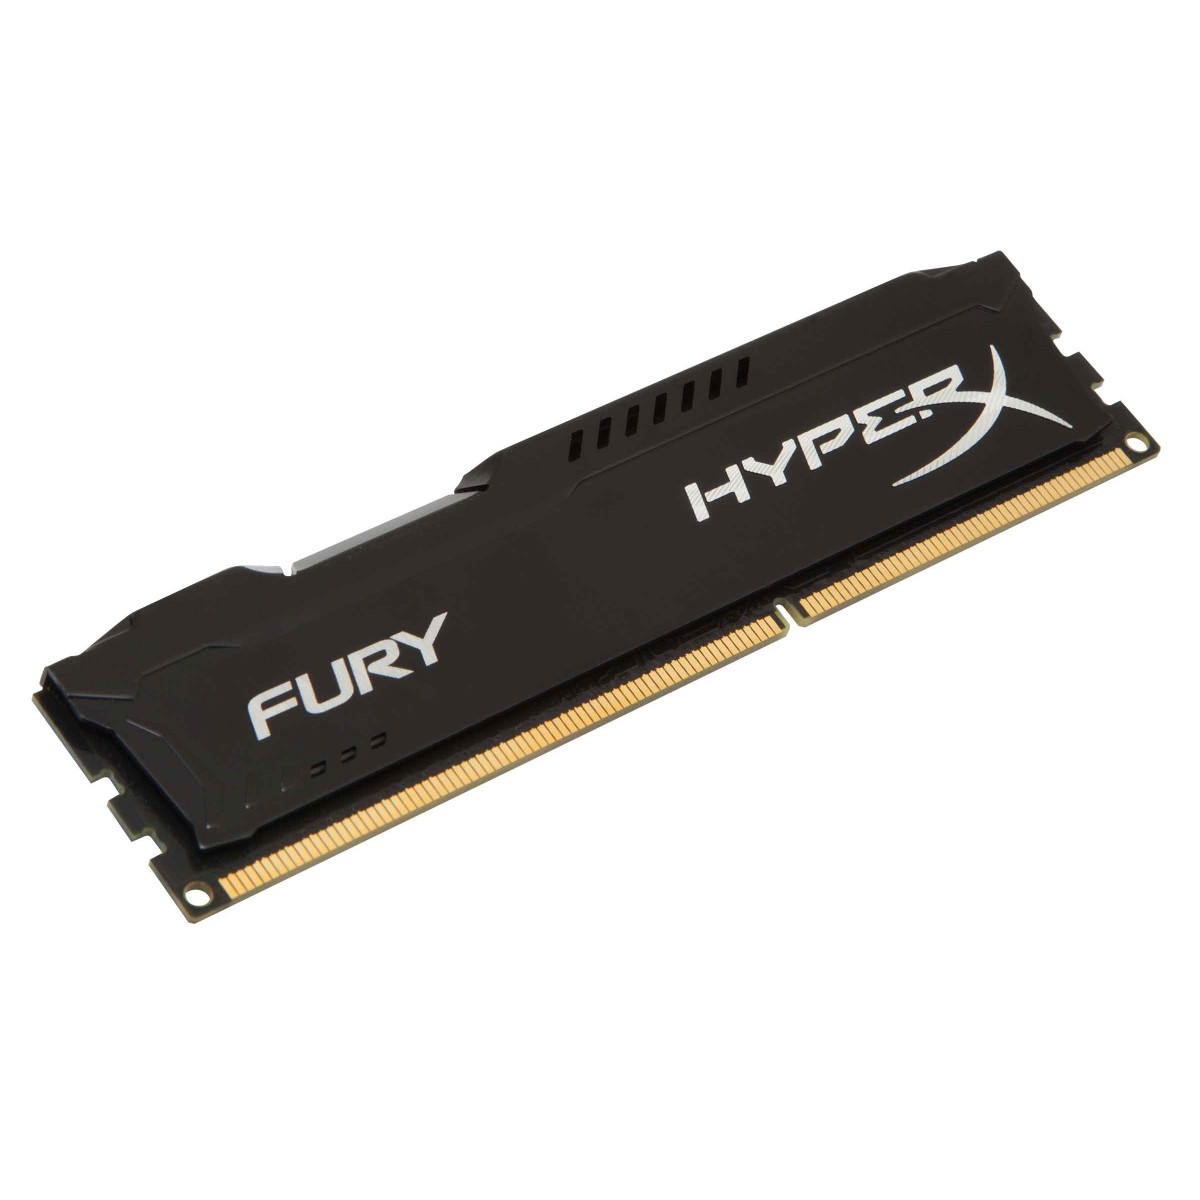 HYPER-X Fury 8GB DDR-3 1600MHz Memory